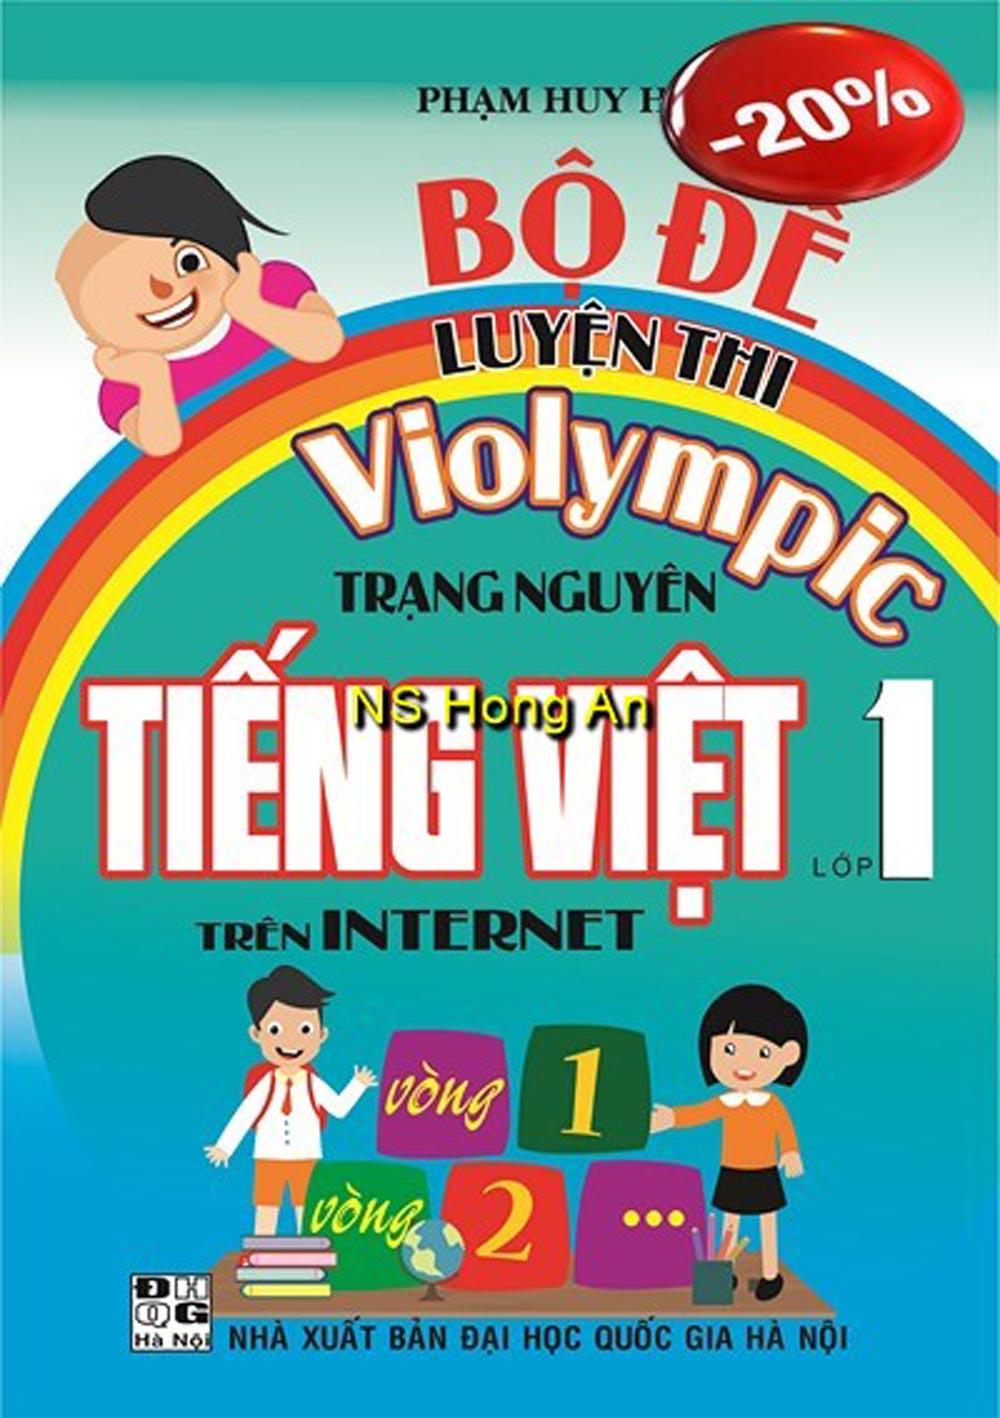 Bộ Đề Luyện Thi Violympic Trạng Nguyên Tiếng Việt Lớp 1 Trên Internet